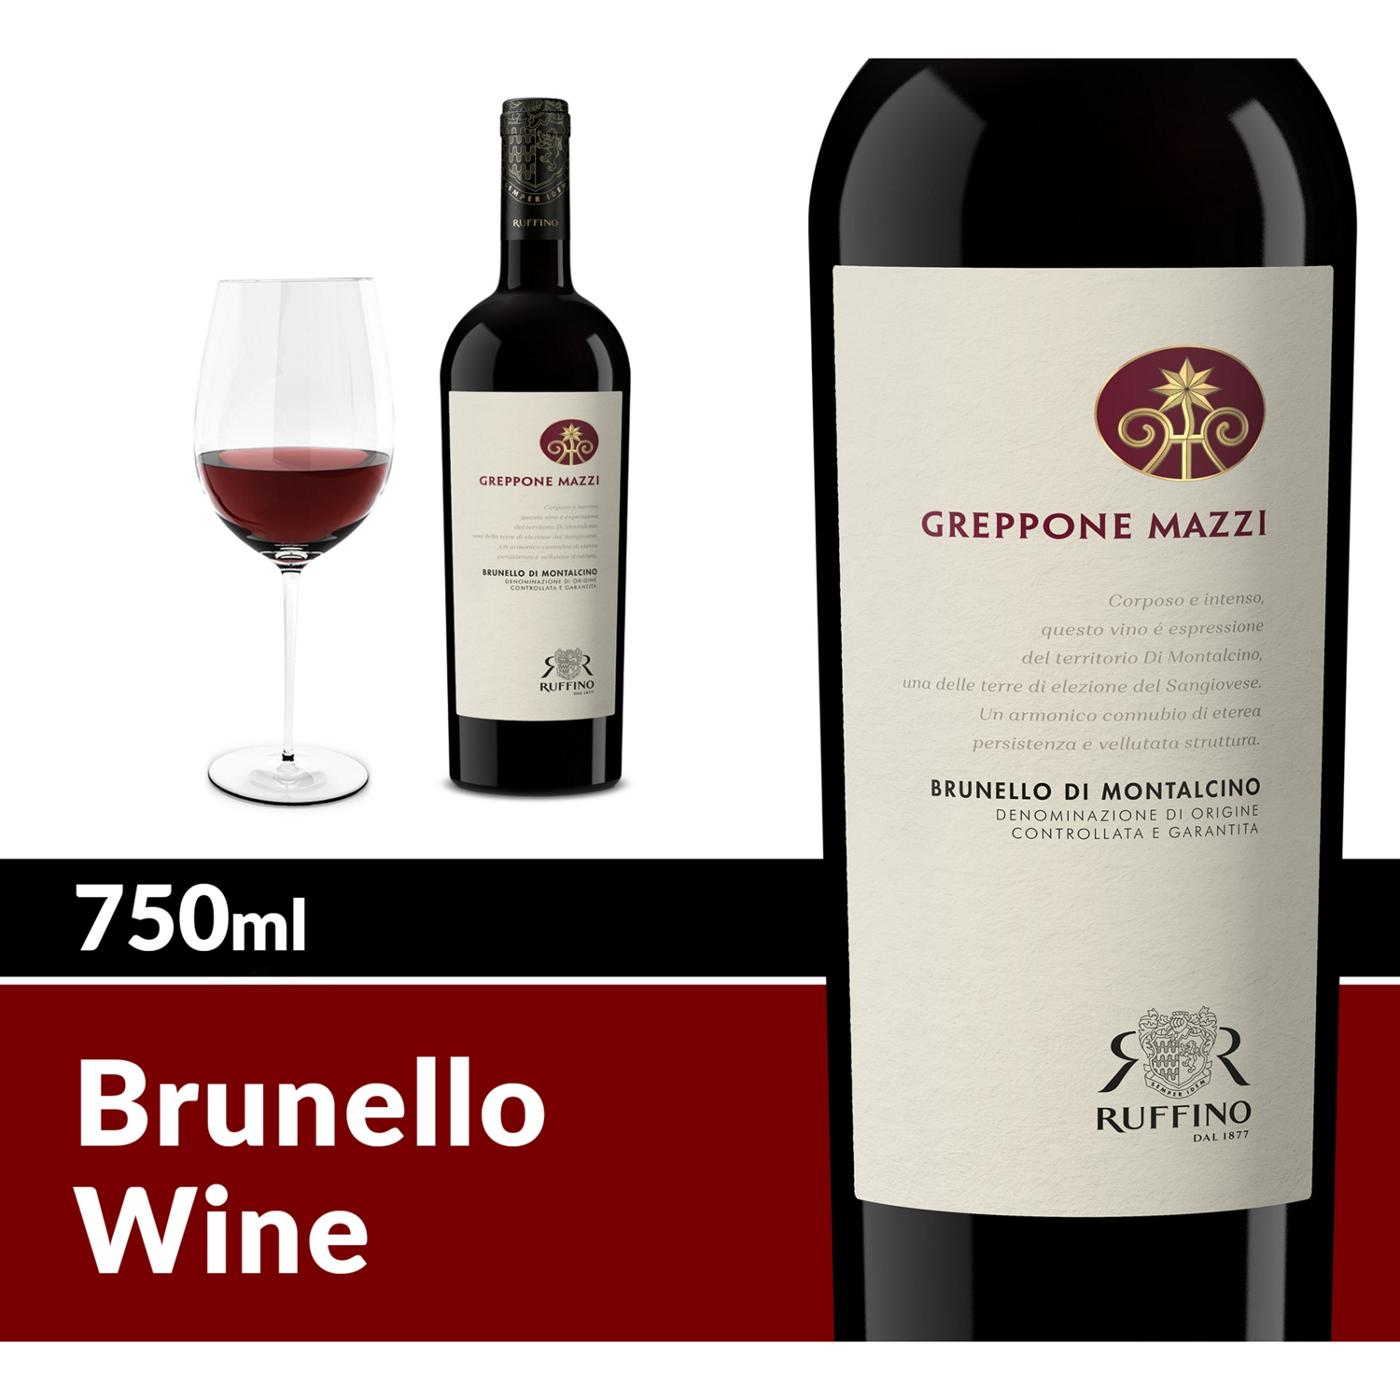 Ruffino Greppone Mazzi Brunello Di Montalcino DOCG Sangiovese Grosso, Italian Red Wine 750 mL Bottle; image 9 of 11